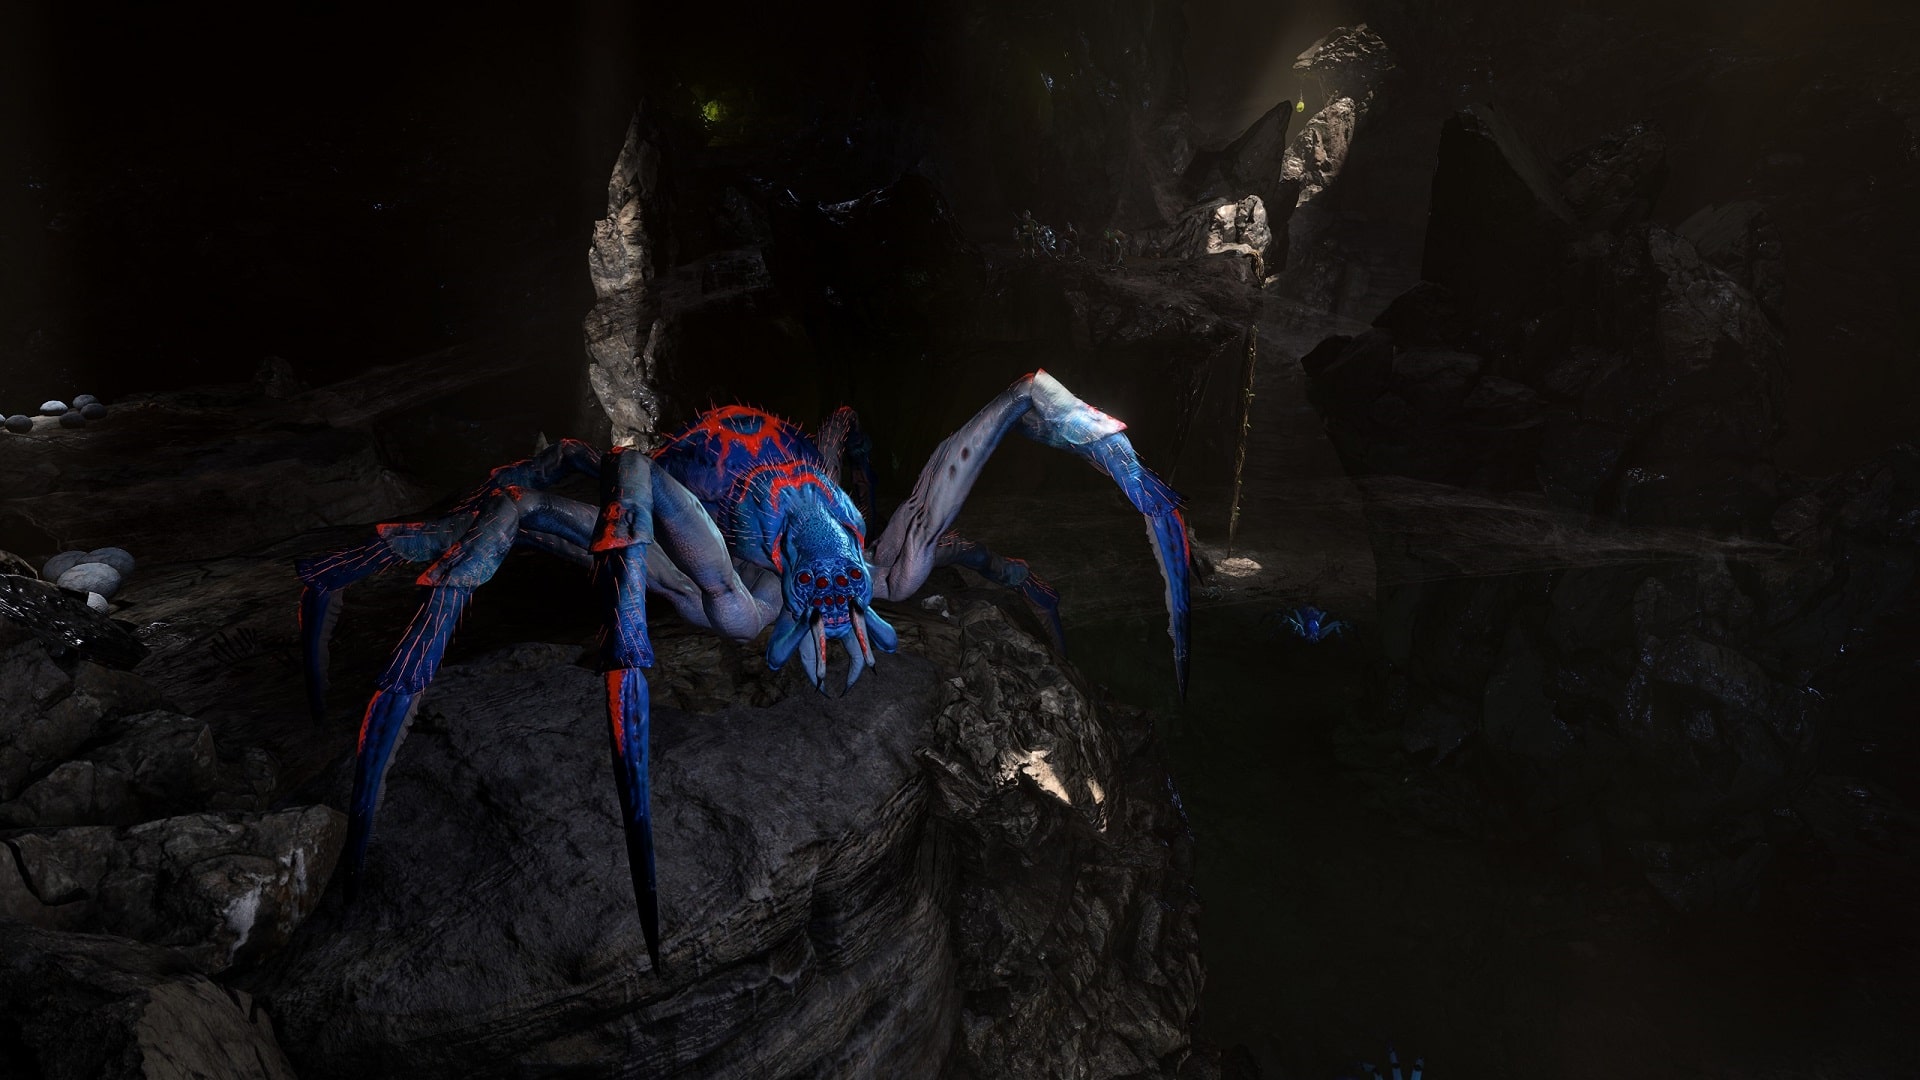 Dargestellt ist ein Screenshot aus dem Videospiel Baldur's Gate 3. Zu sehen ist eine gigantische Spinne, die in einer Höhle sitzt. Im Hintergrund ist eine Gruppe Abenteurer zu sehen. Die Benutzeroberfläche des Spiels ist ausgeblendet.